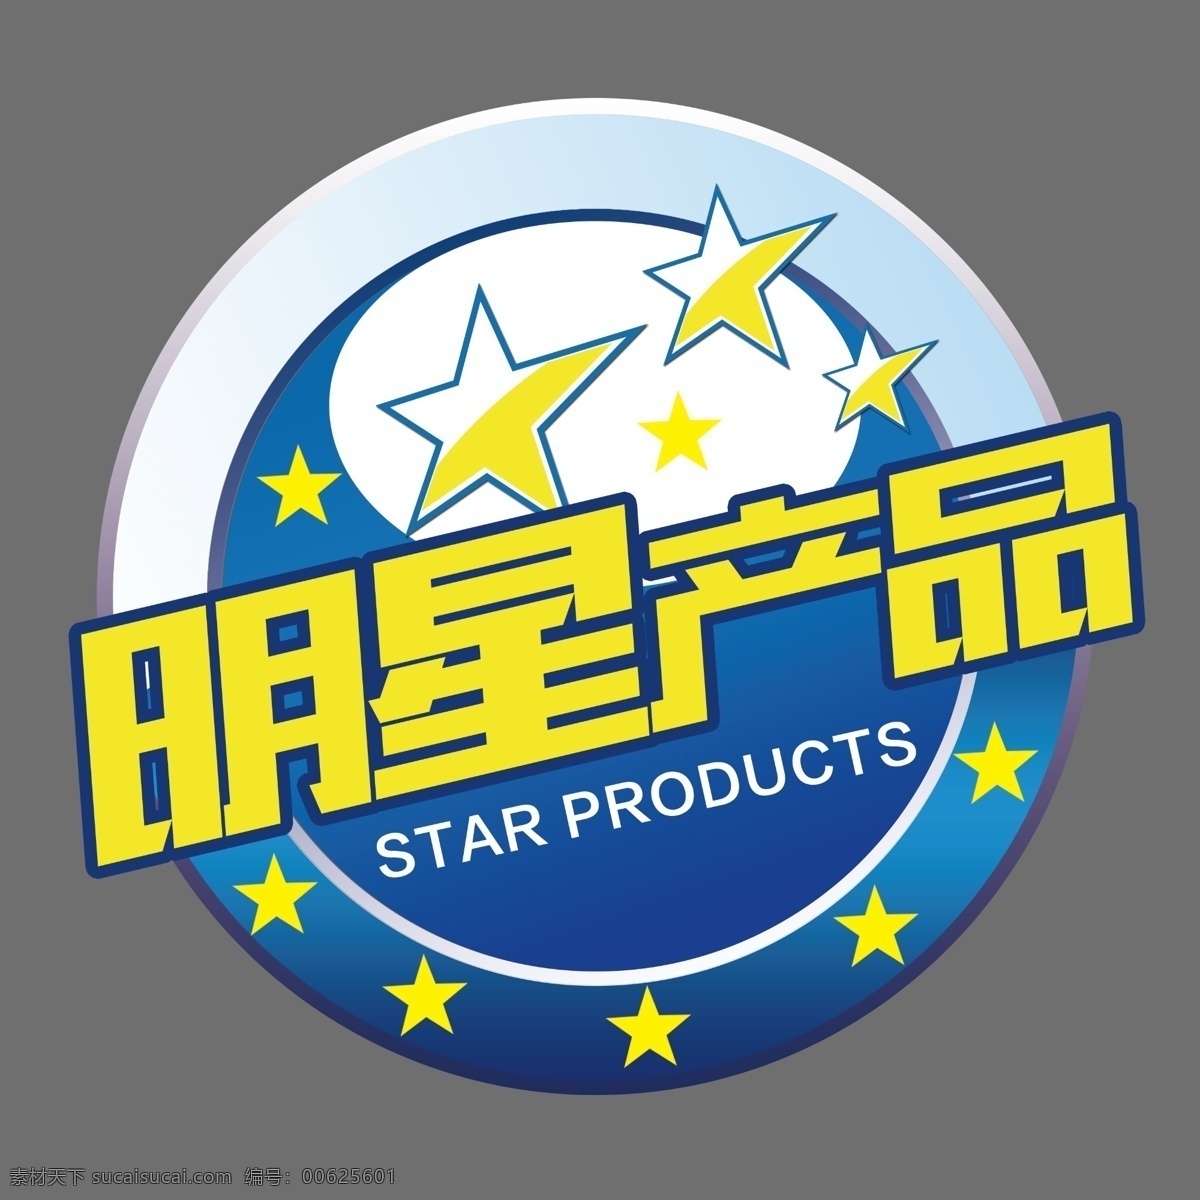 明星 产品 价格 贴 明星产品 标签 星星 标识 促销